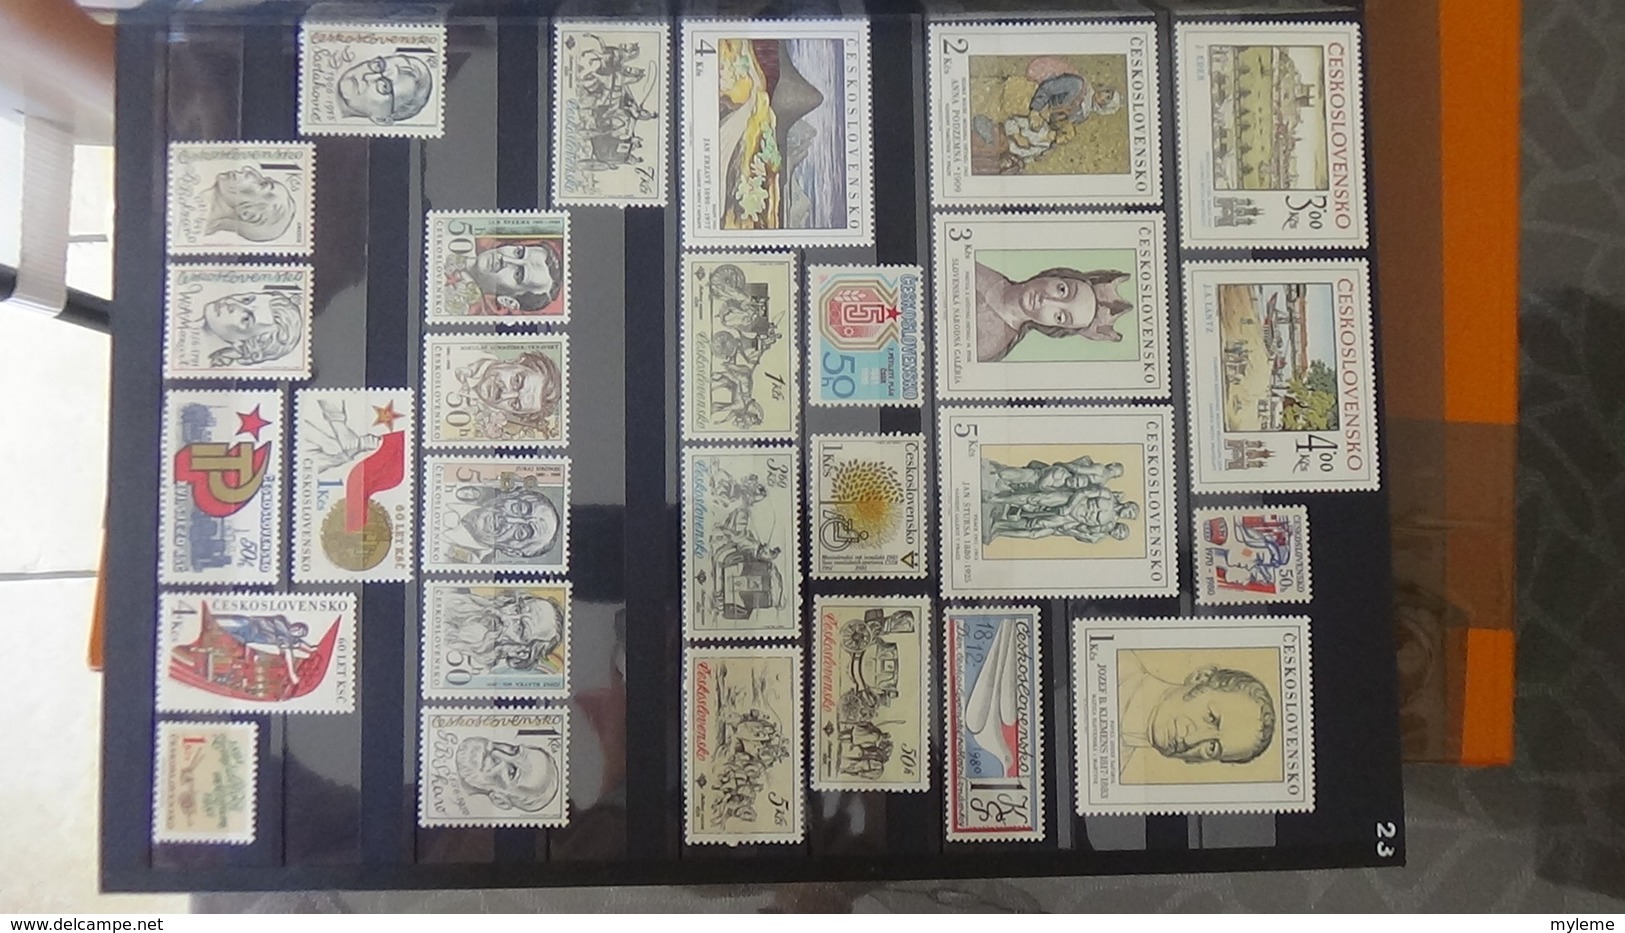 Collection de TCHECOSLOVAQUIE  en timbres ** et blocs oblitérés. A saisir !!!